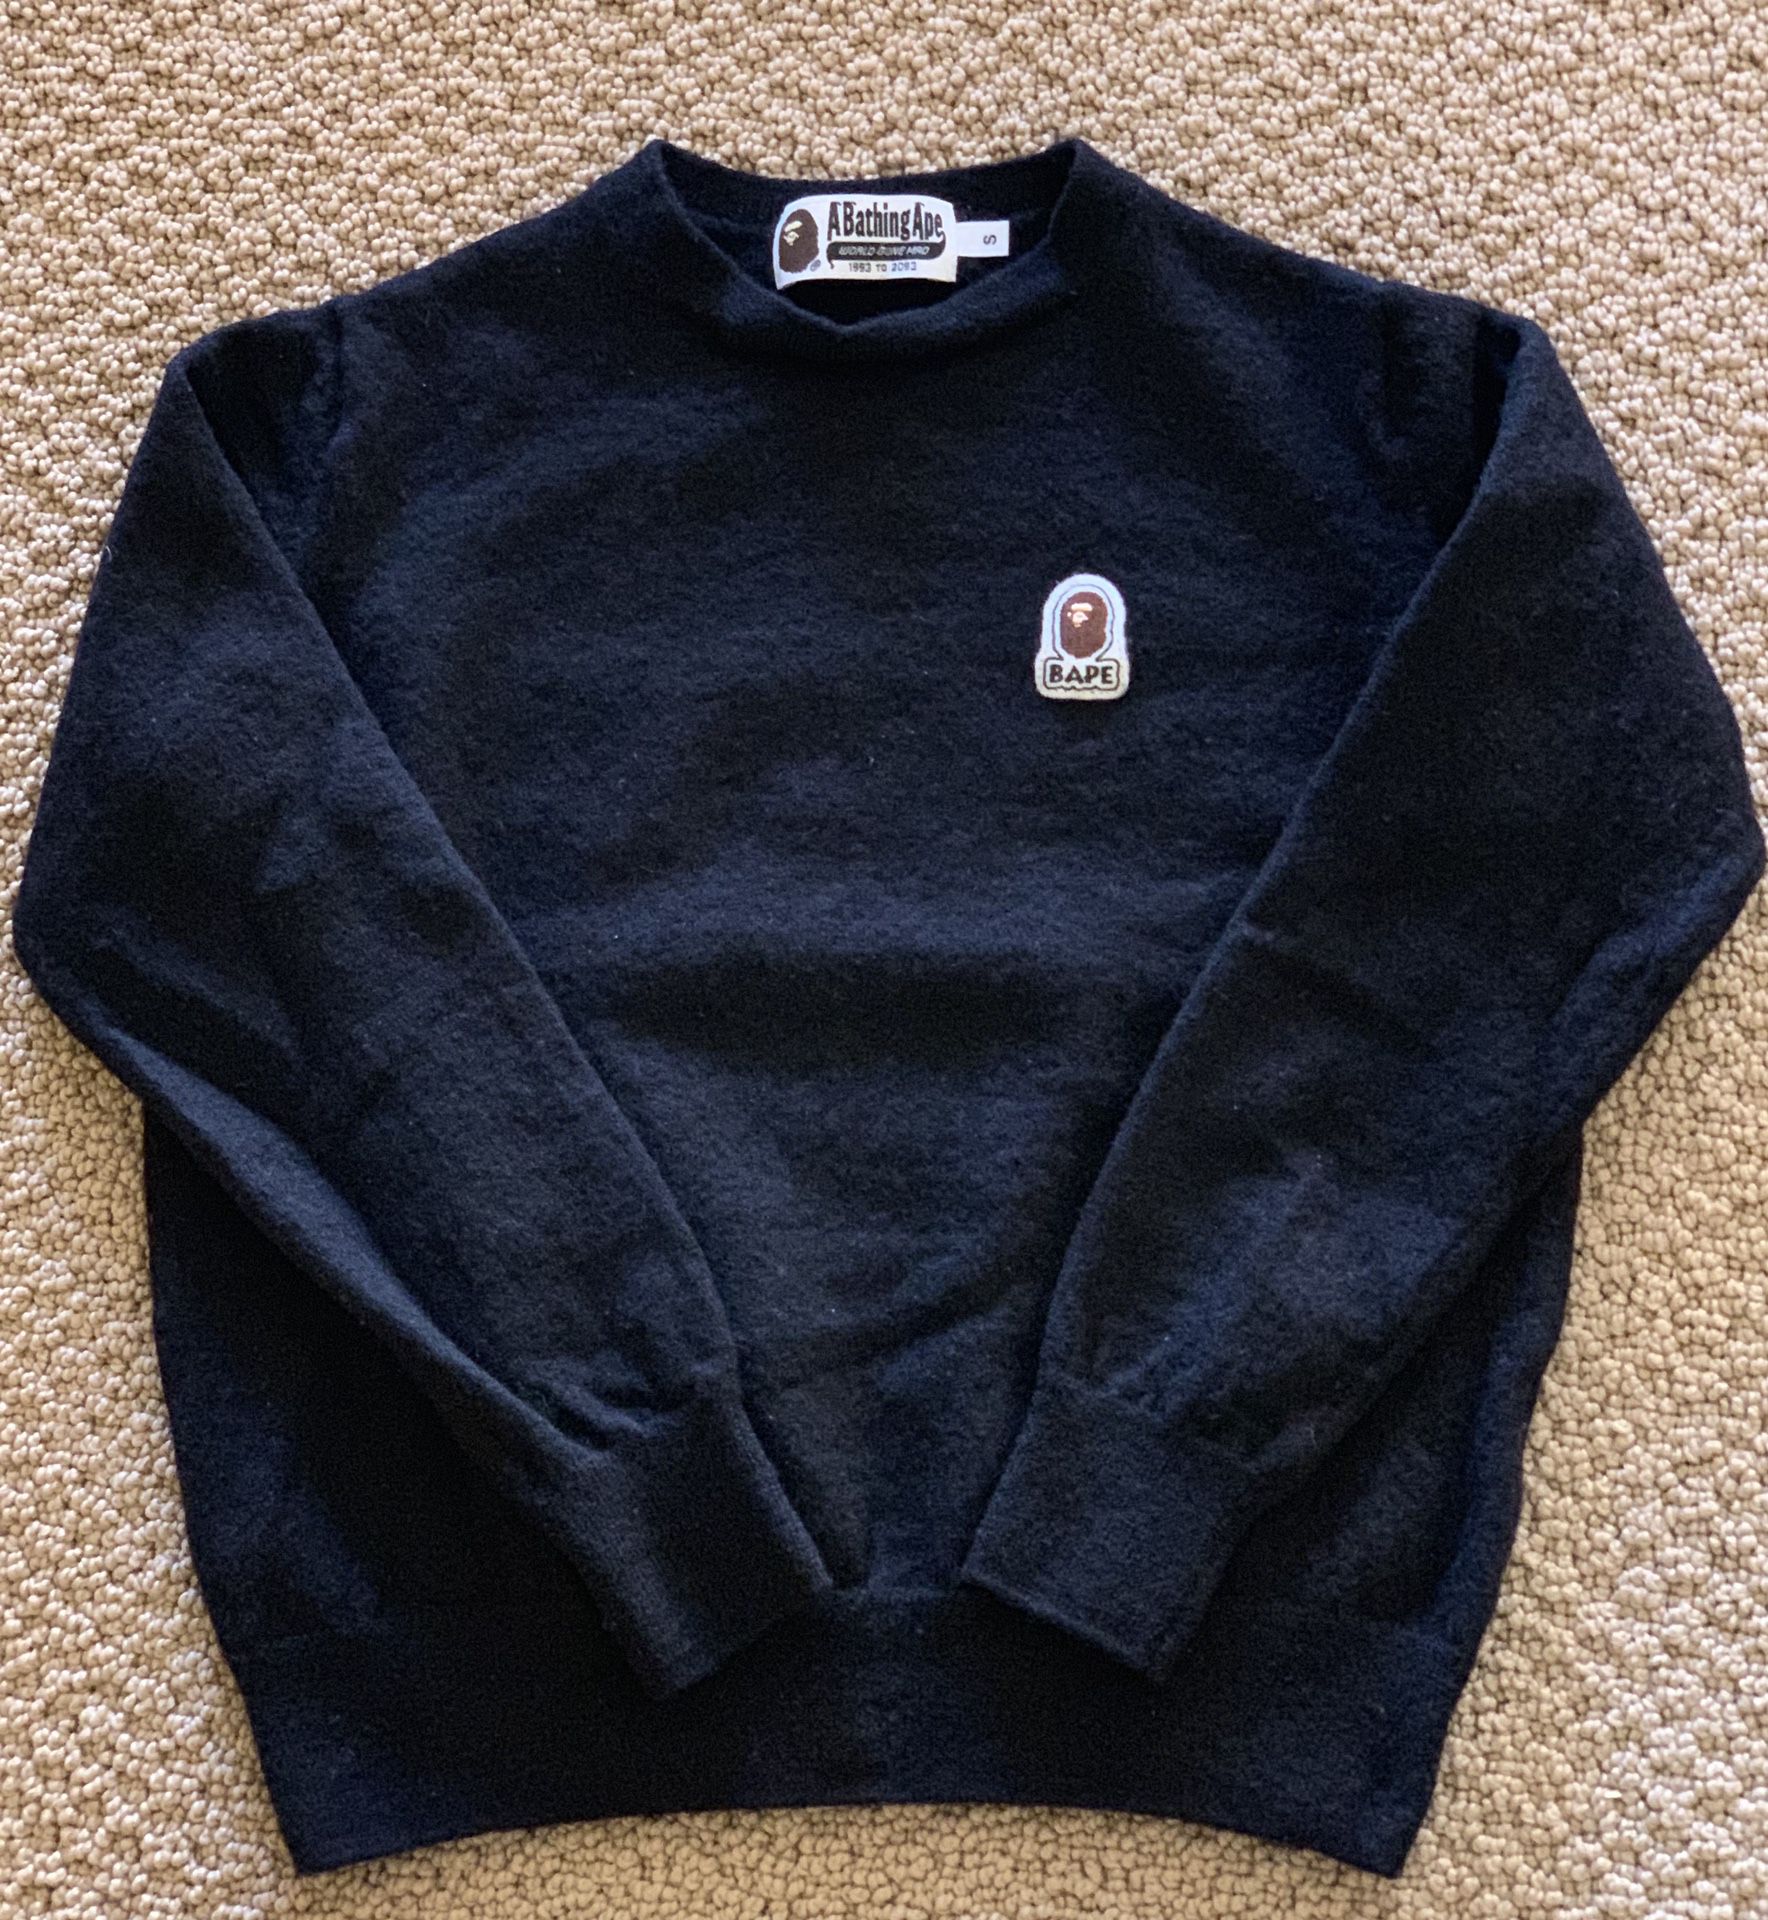 BAPE Sweater Womens XS/Small